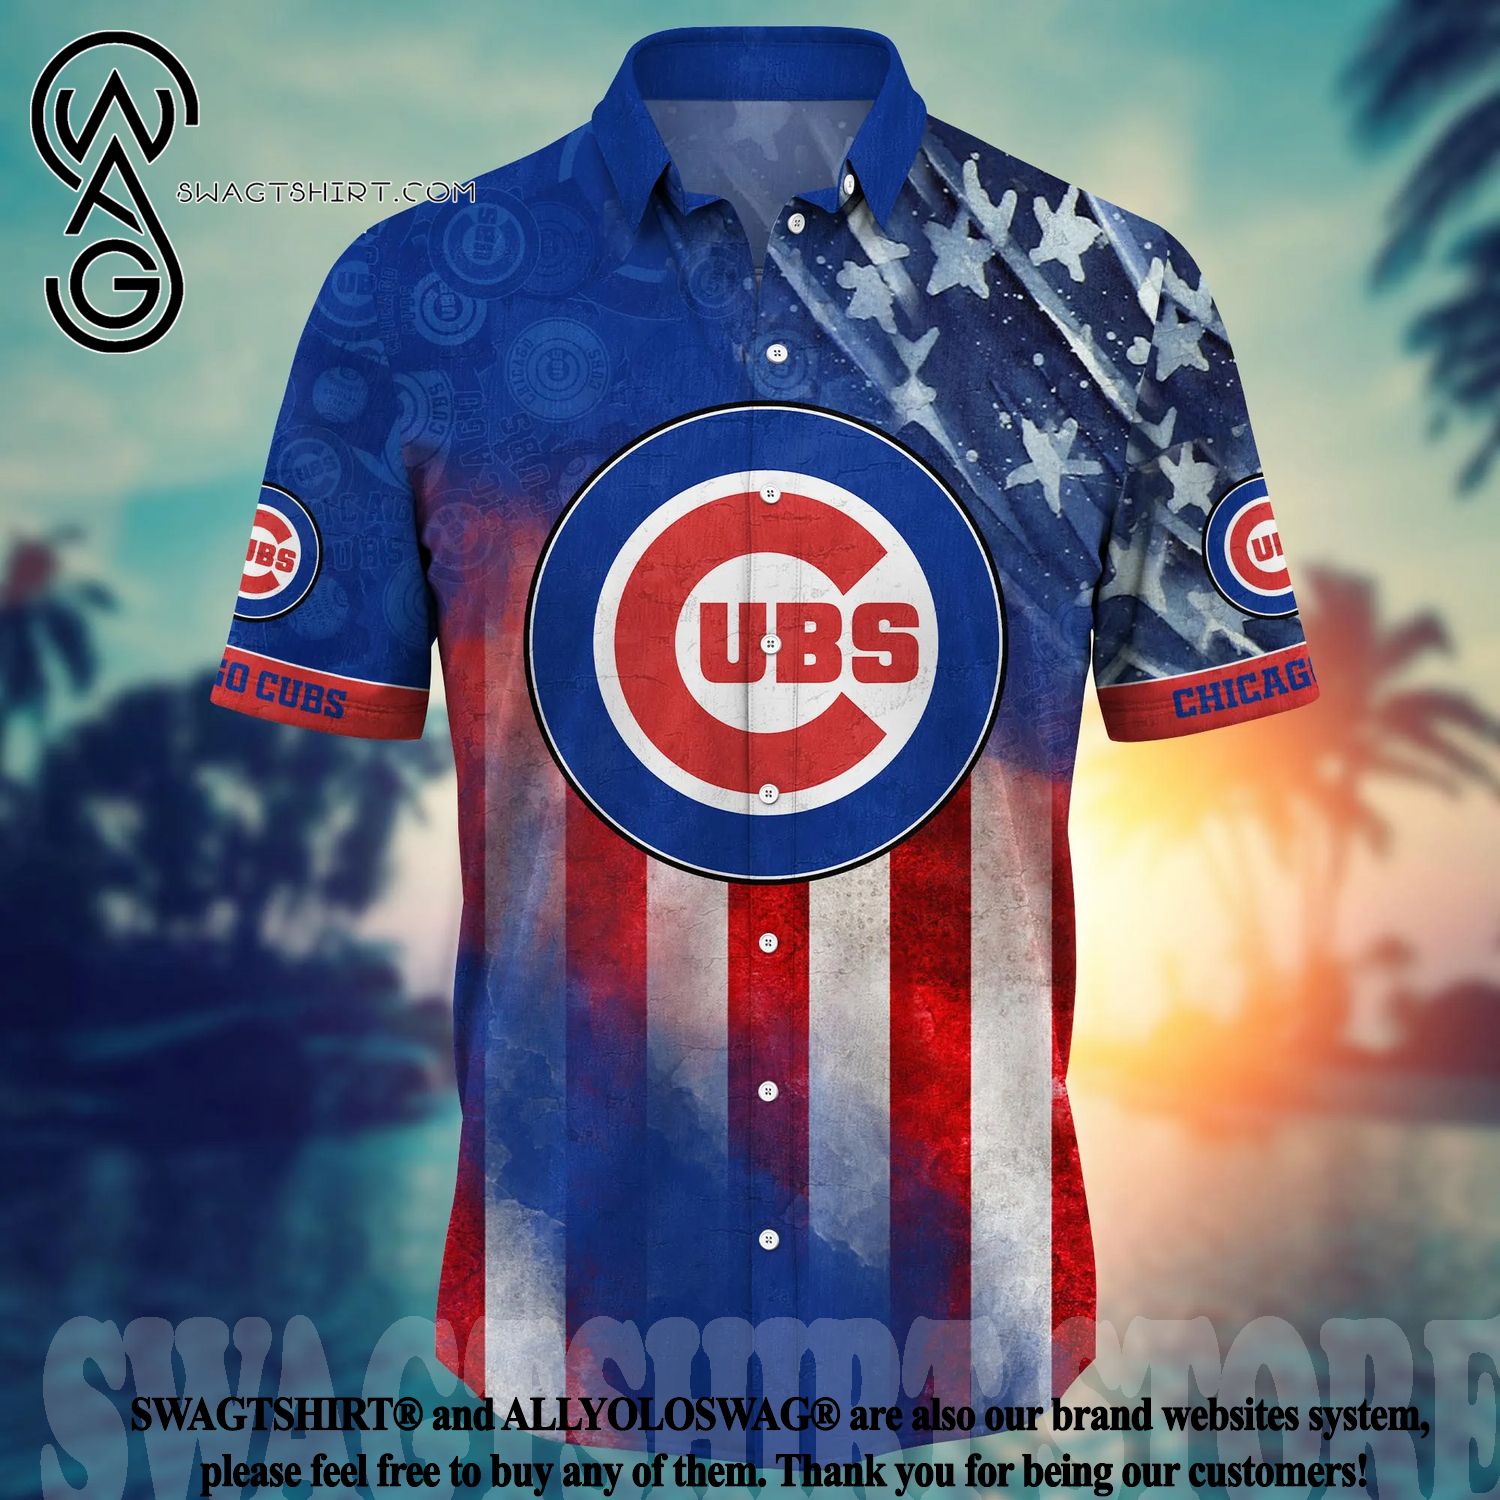 Chicago Cubs MLB Hawaiian Shirt Men - Best Seller Shirts Design In Usa